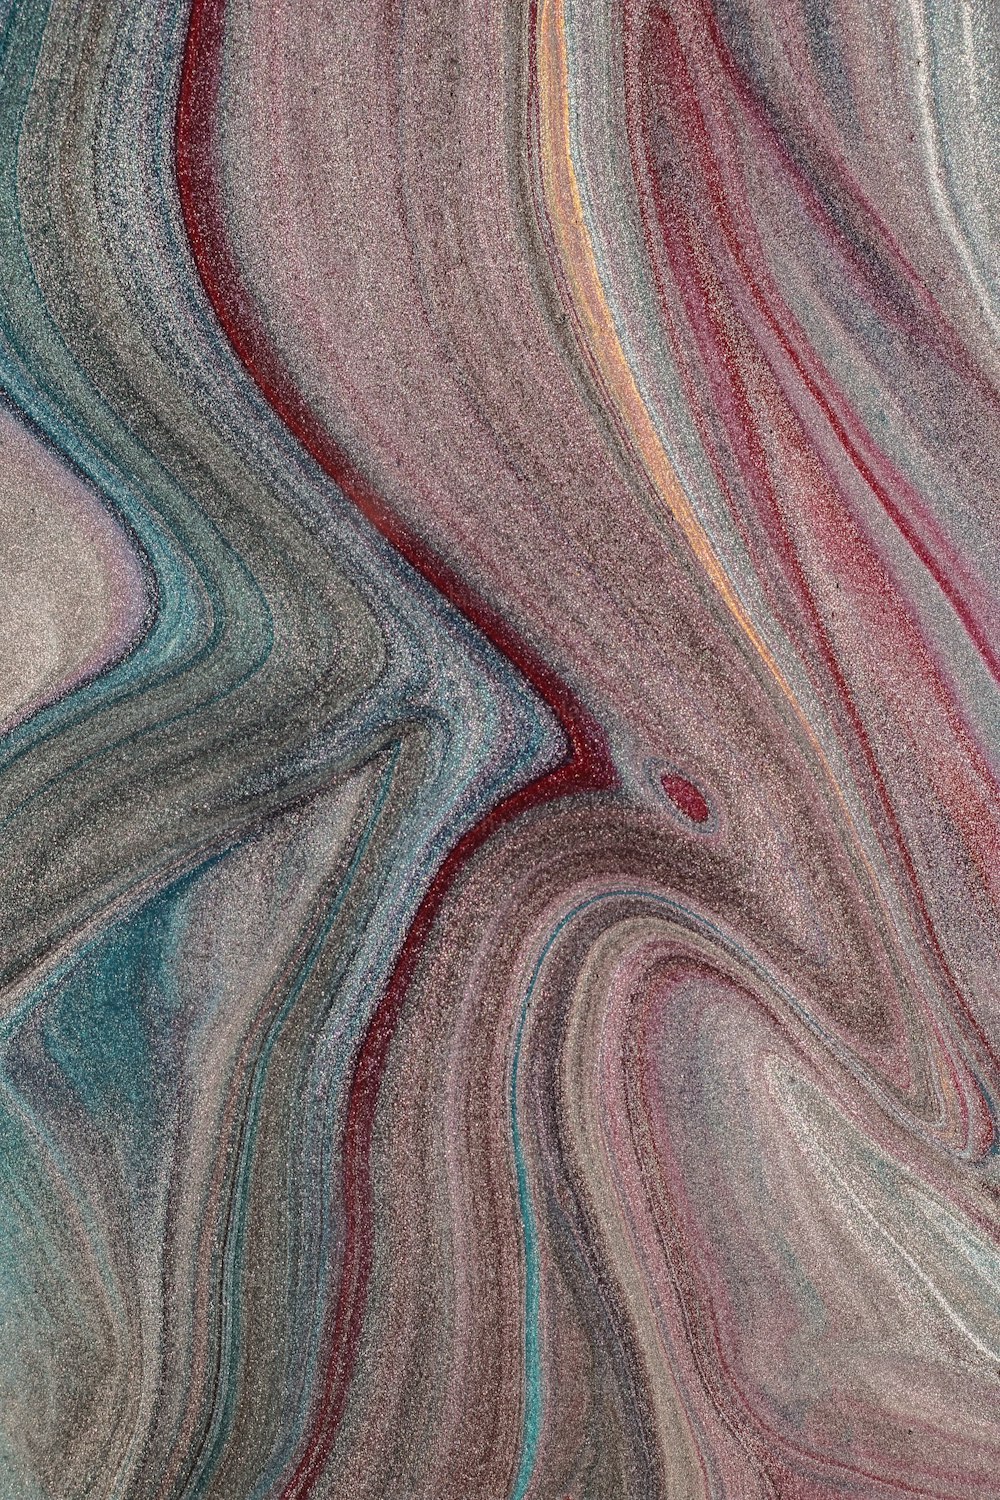 Una pintura abstracta de líneas multicolores